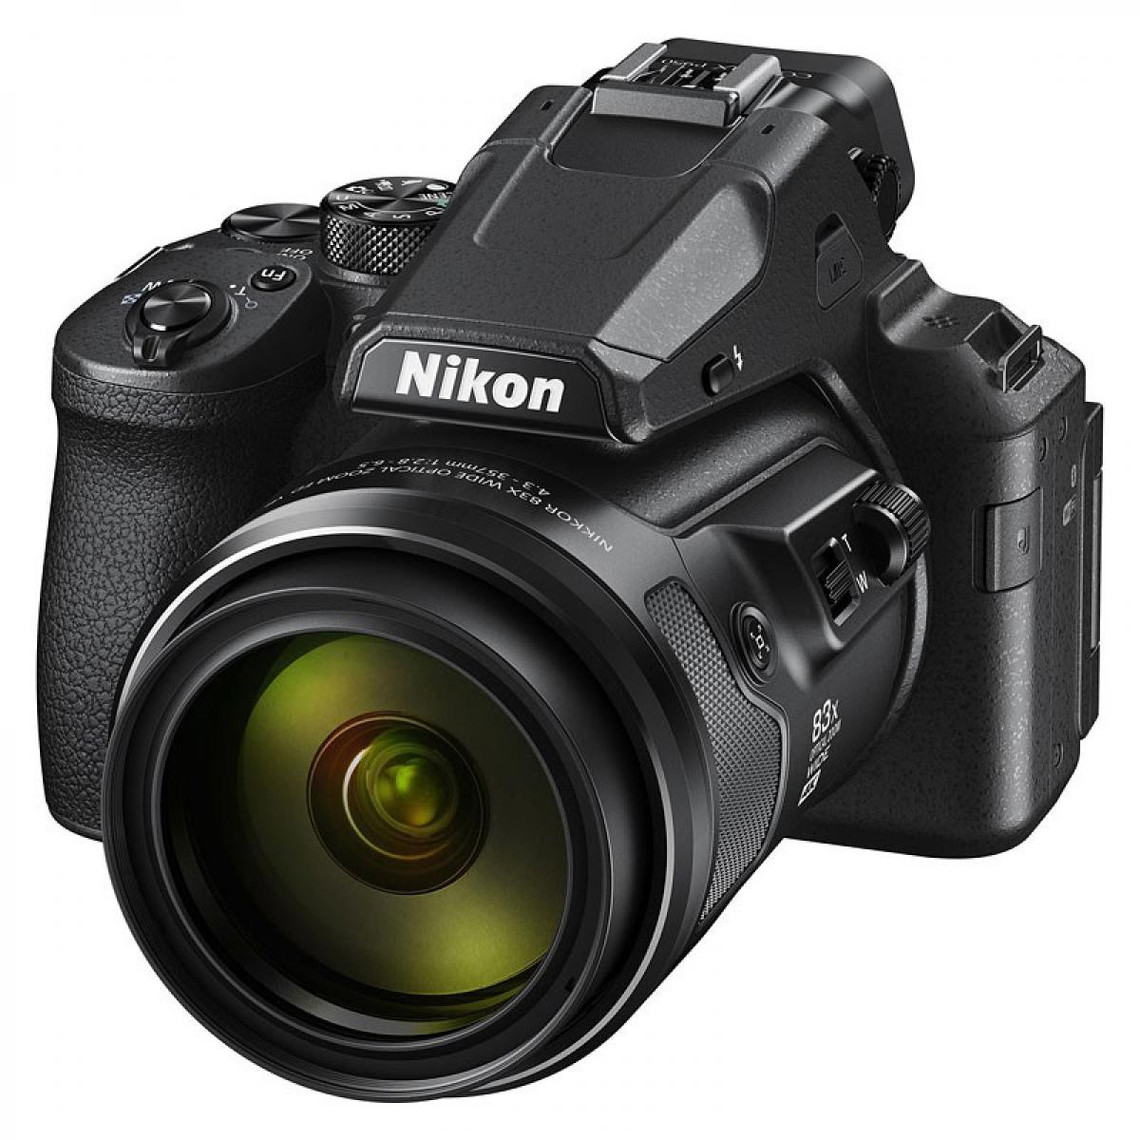 Appareil compact Nikon NIKON Bridge Coolpix P950 Noir 16Mp - Videos 4K/UHD 30 i/s - Zoom exceptionnel 83X 24 a 2000 mm - Ecran OLED orientable de 2,53M